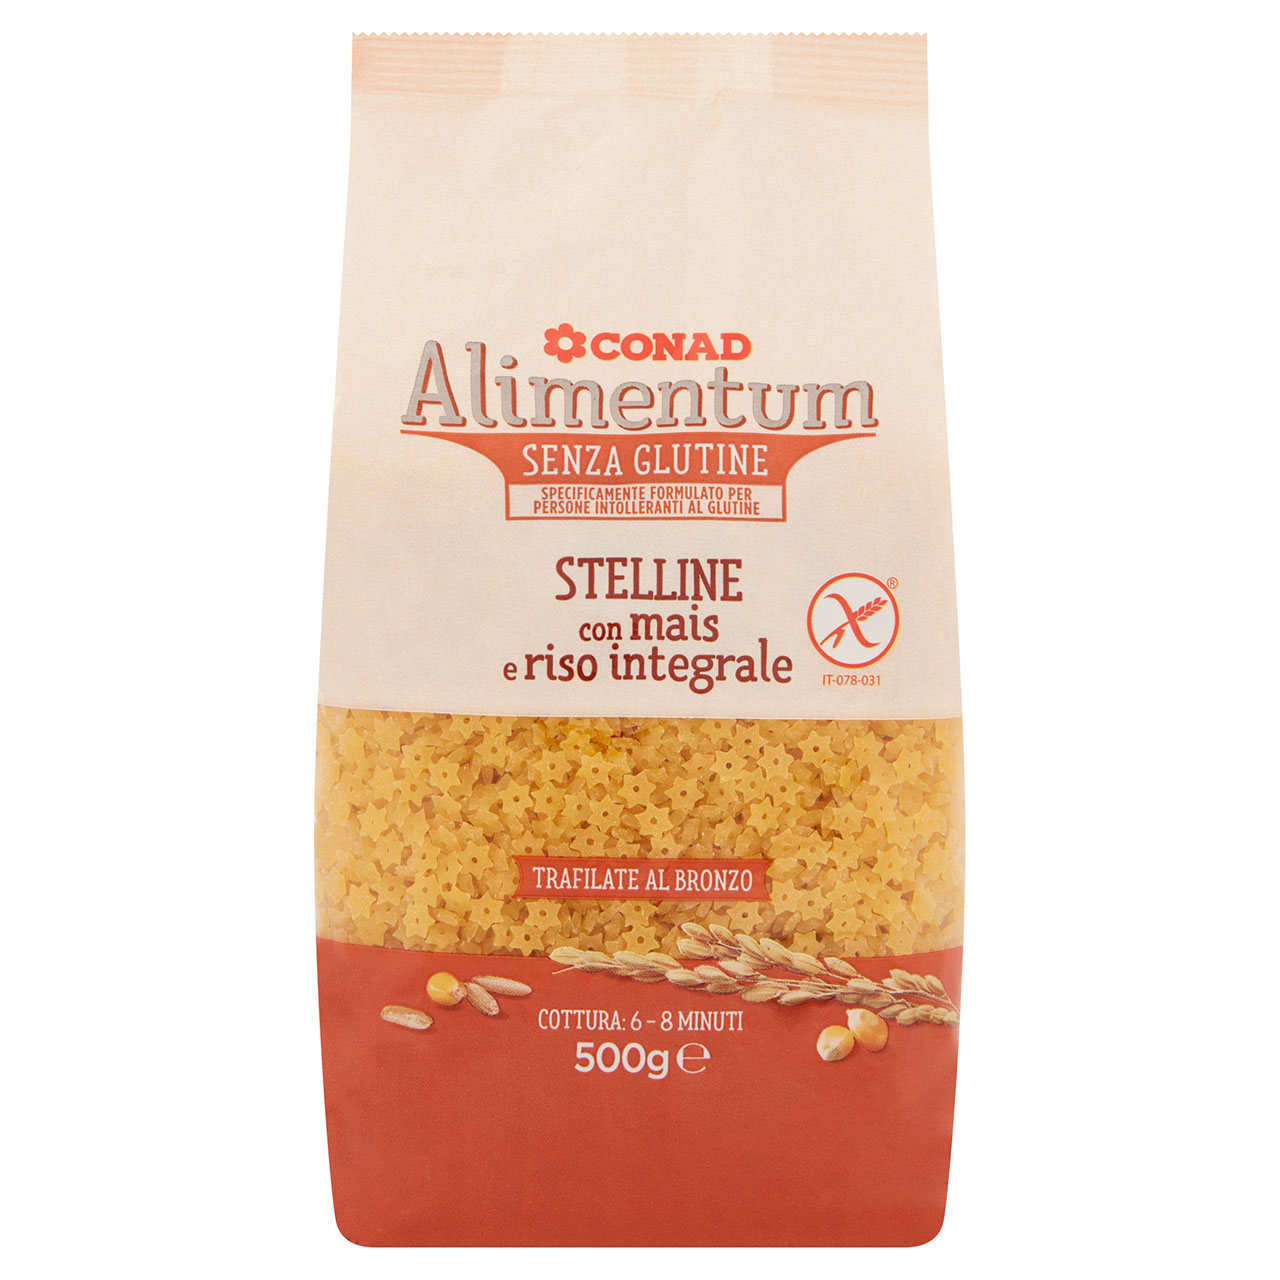 Stelline Senza Glutine 500g Alimentum Conad online